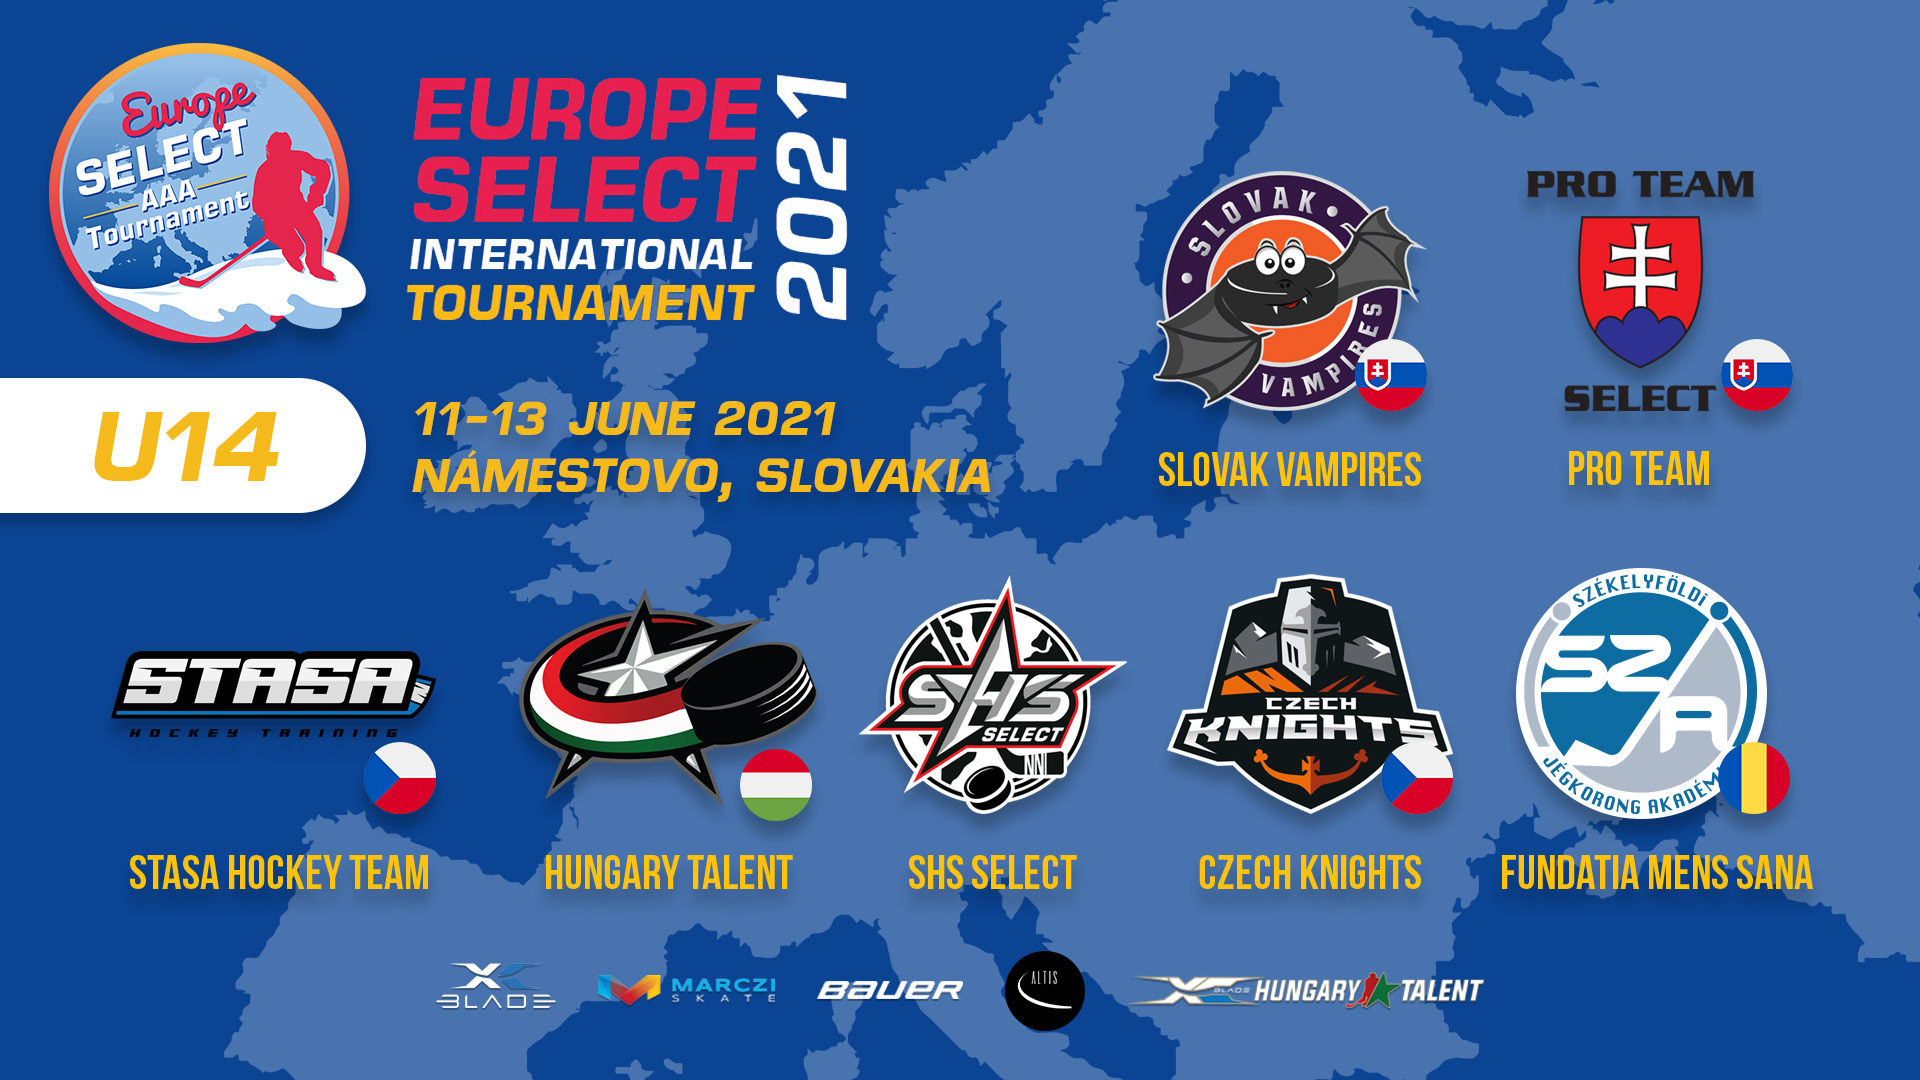 Júniusban U14 Europe Select Tournament